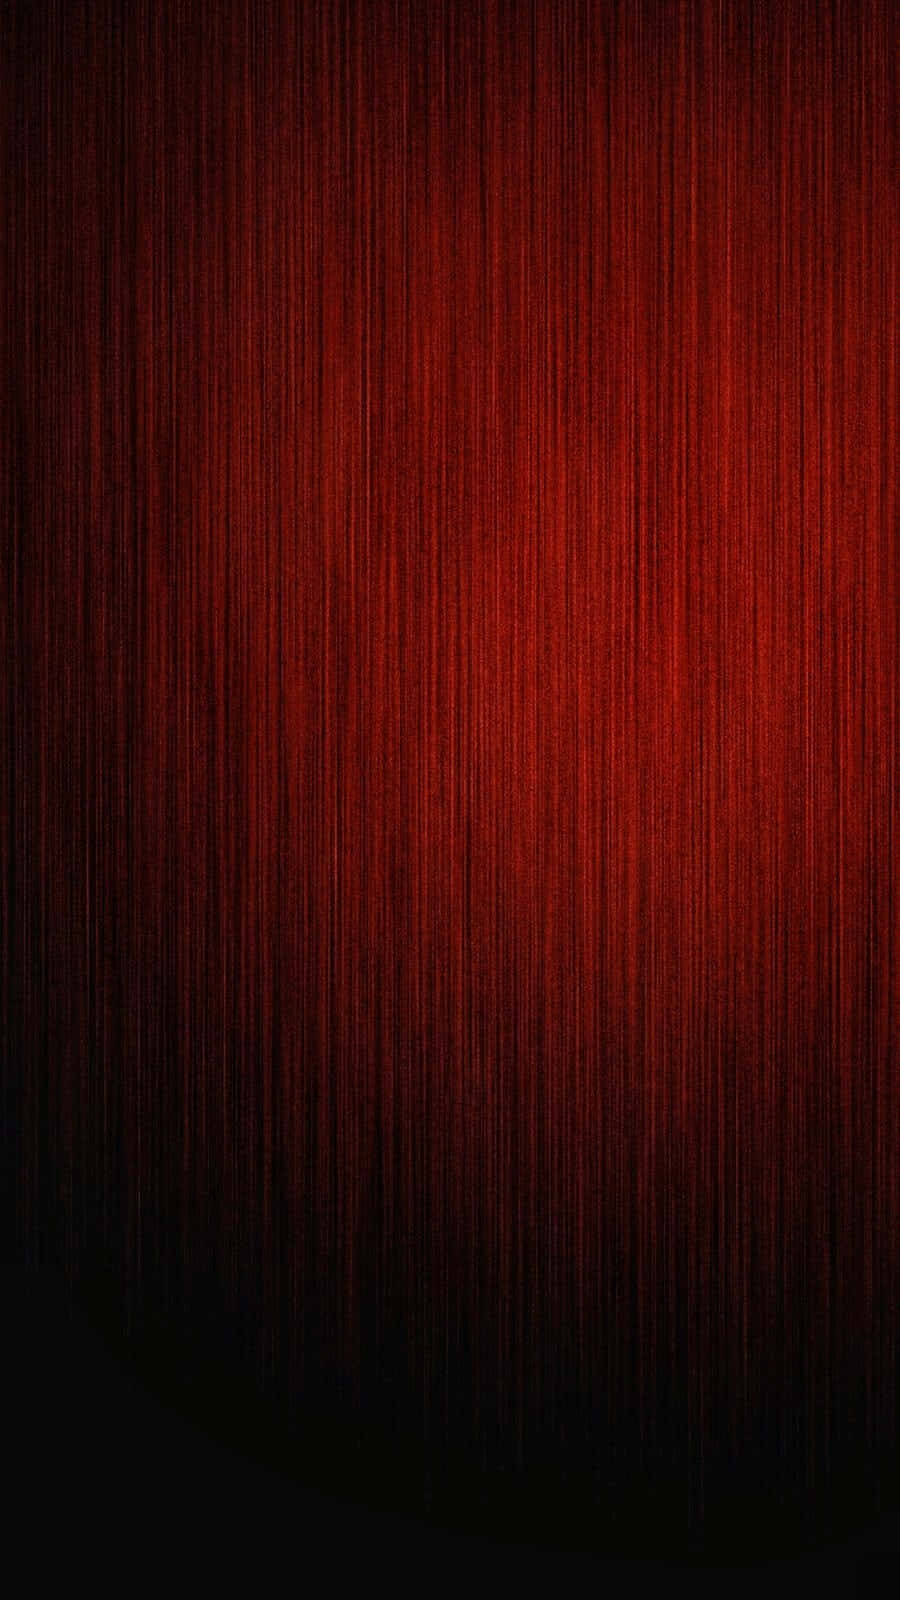 Fondorojo Oscuro Con Textura De Madera Roja.